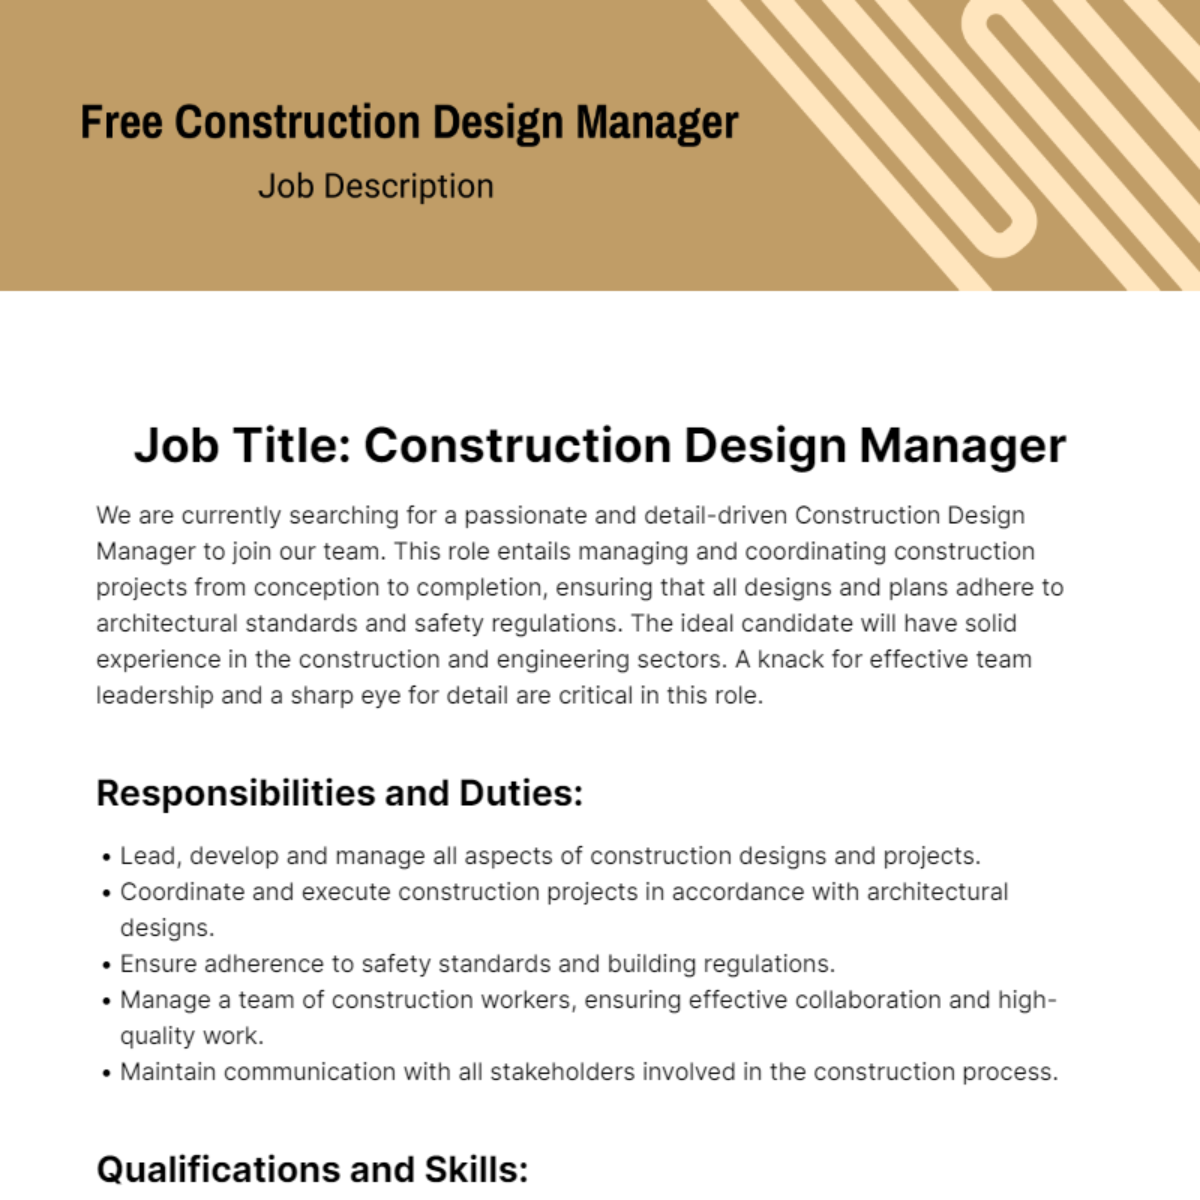 Construction Design Manager Job Description Template